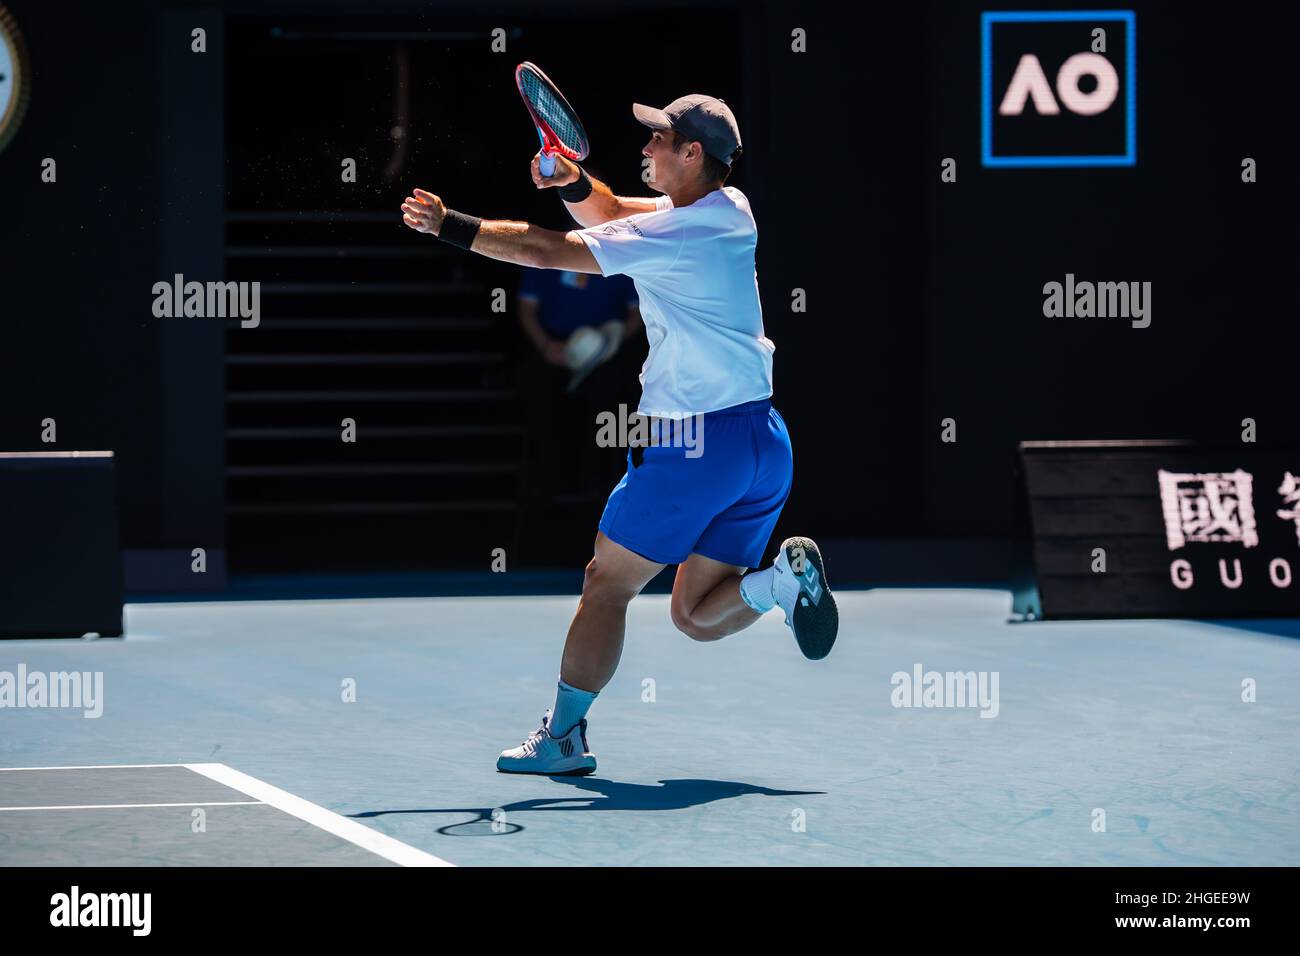 Marcus Giron (USA) läuft beim Grand Slam in der Rod Laver Arena im Melbourne Olympic Park in einem Spiel gegen Rafael Nadal (ESP) in der Australian Open 2022 Round 1 über die Rücklinie (Endstand Nadal gewinnt in 3 Sätzen 6:1, 6:4, 6:2). Stockfoto